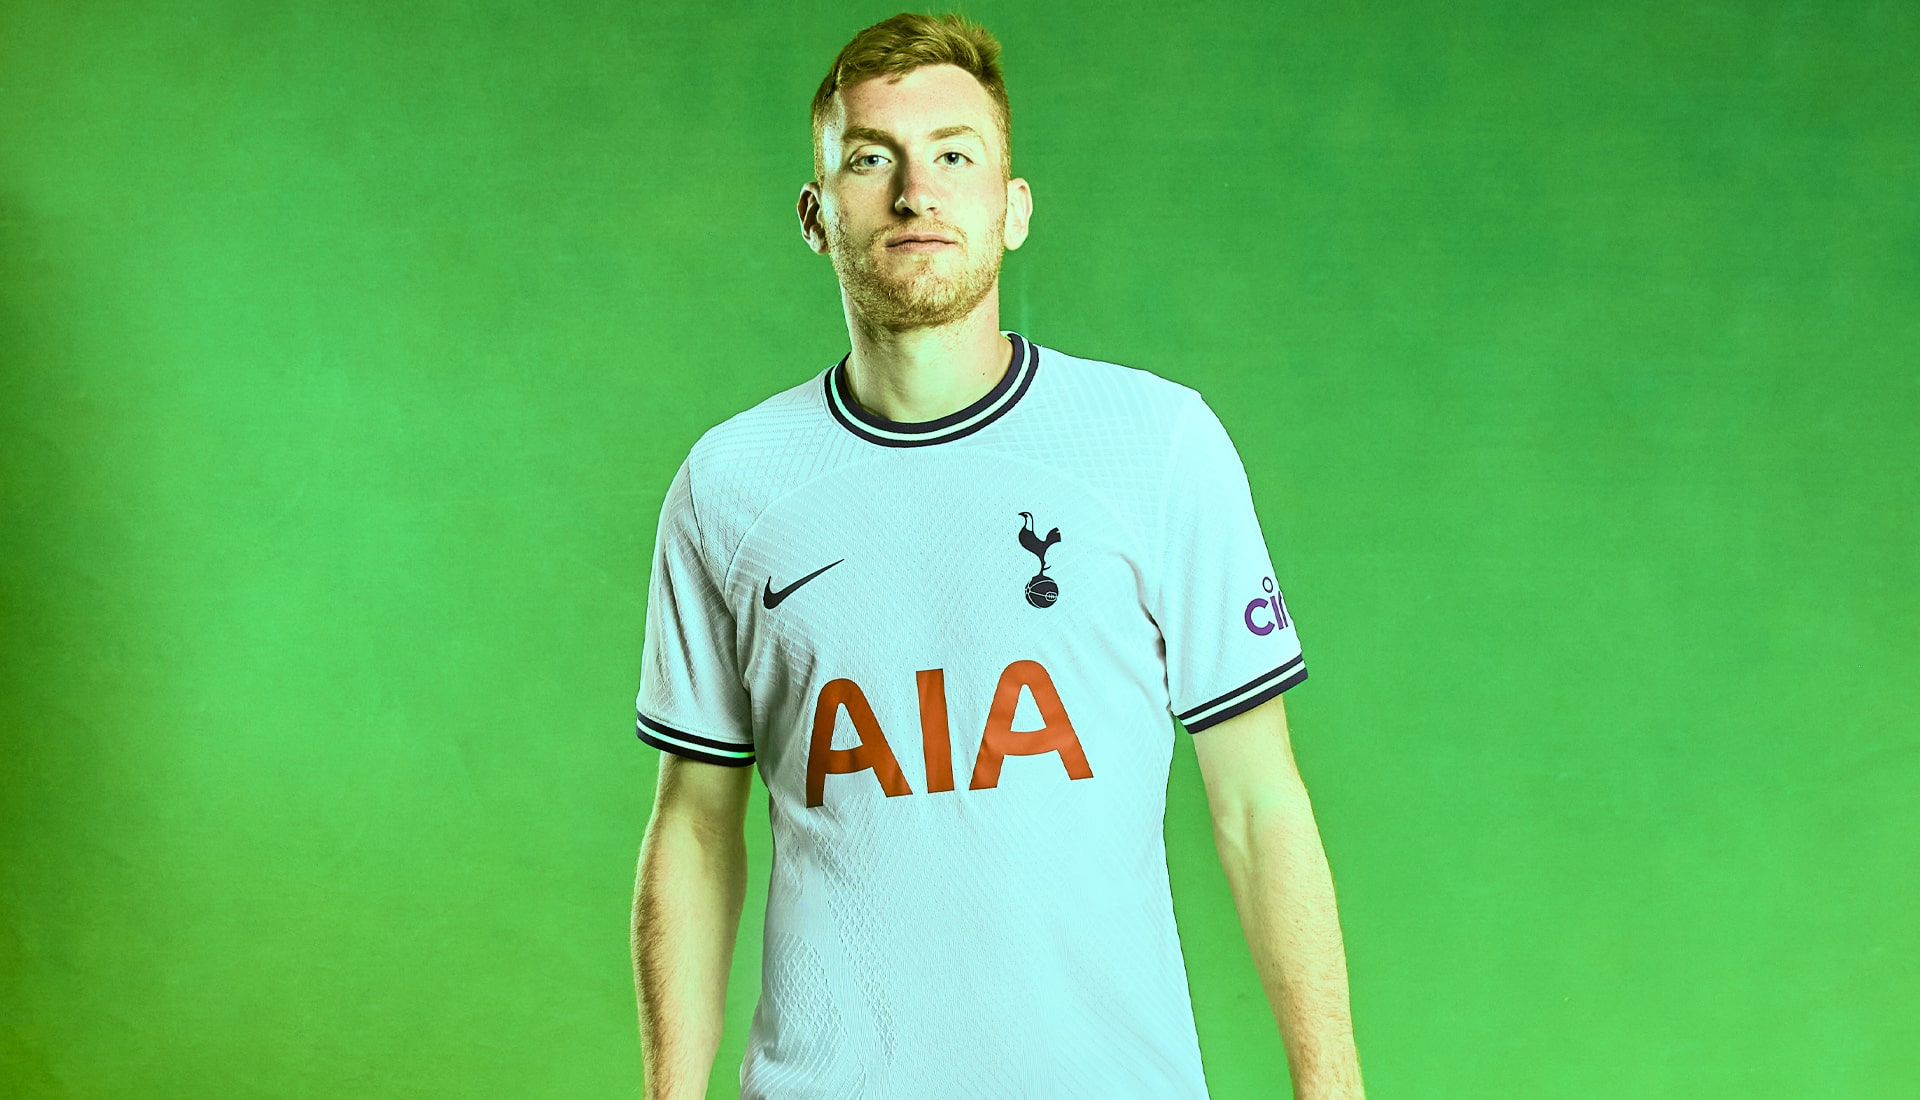 Nike phát hành áo thi đấu cho câu lạc bộ Tottenham